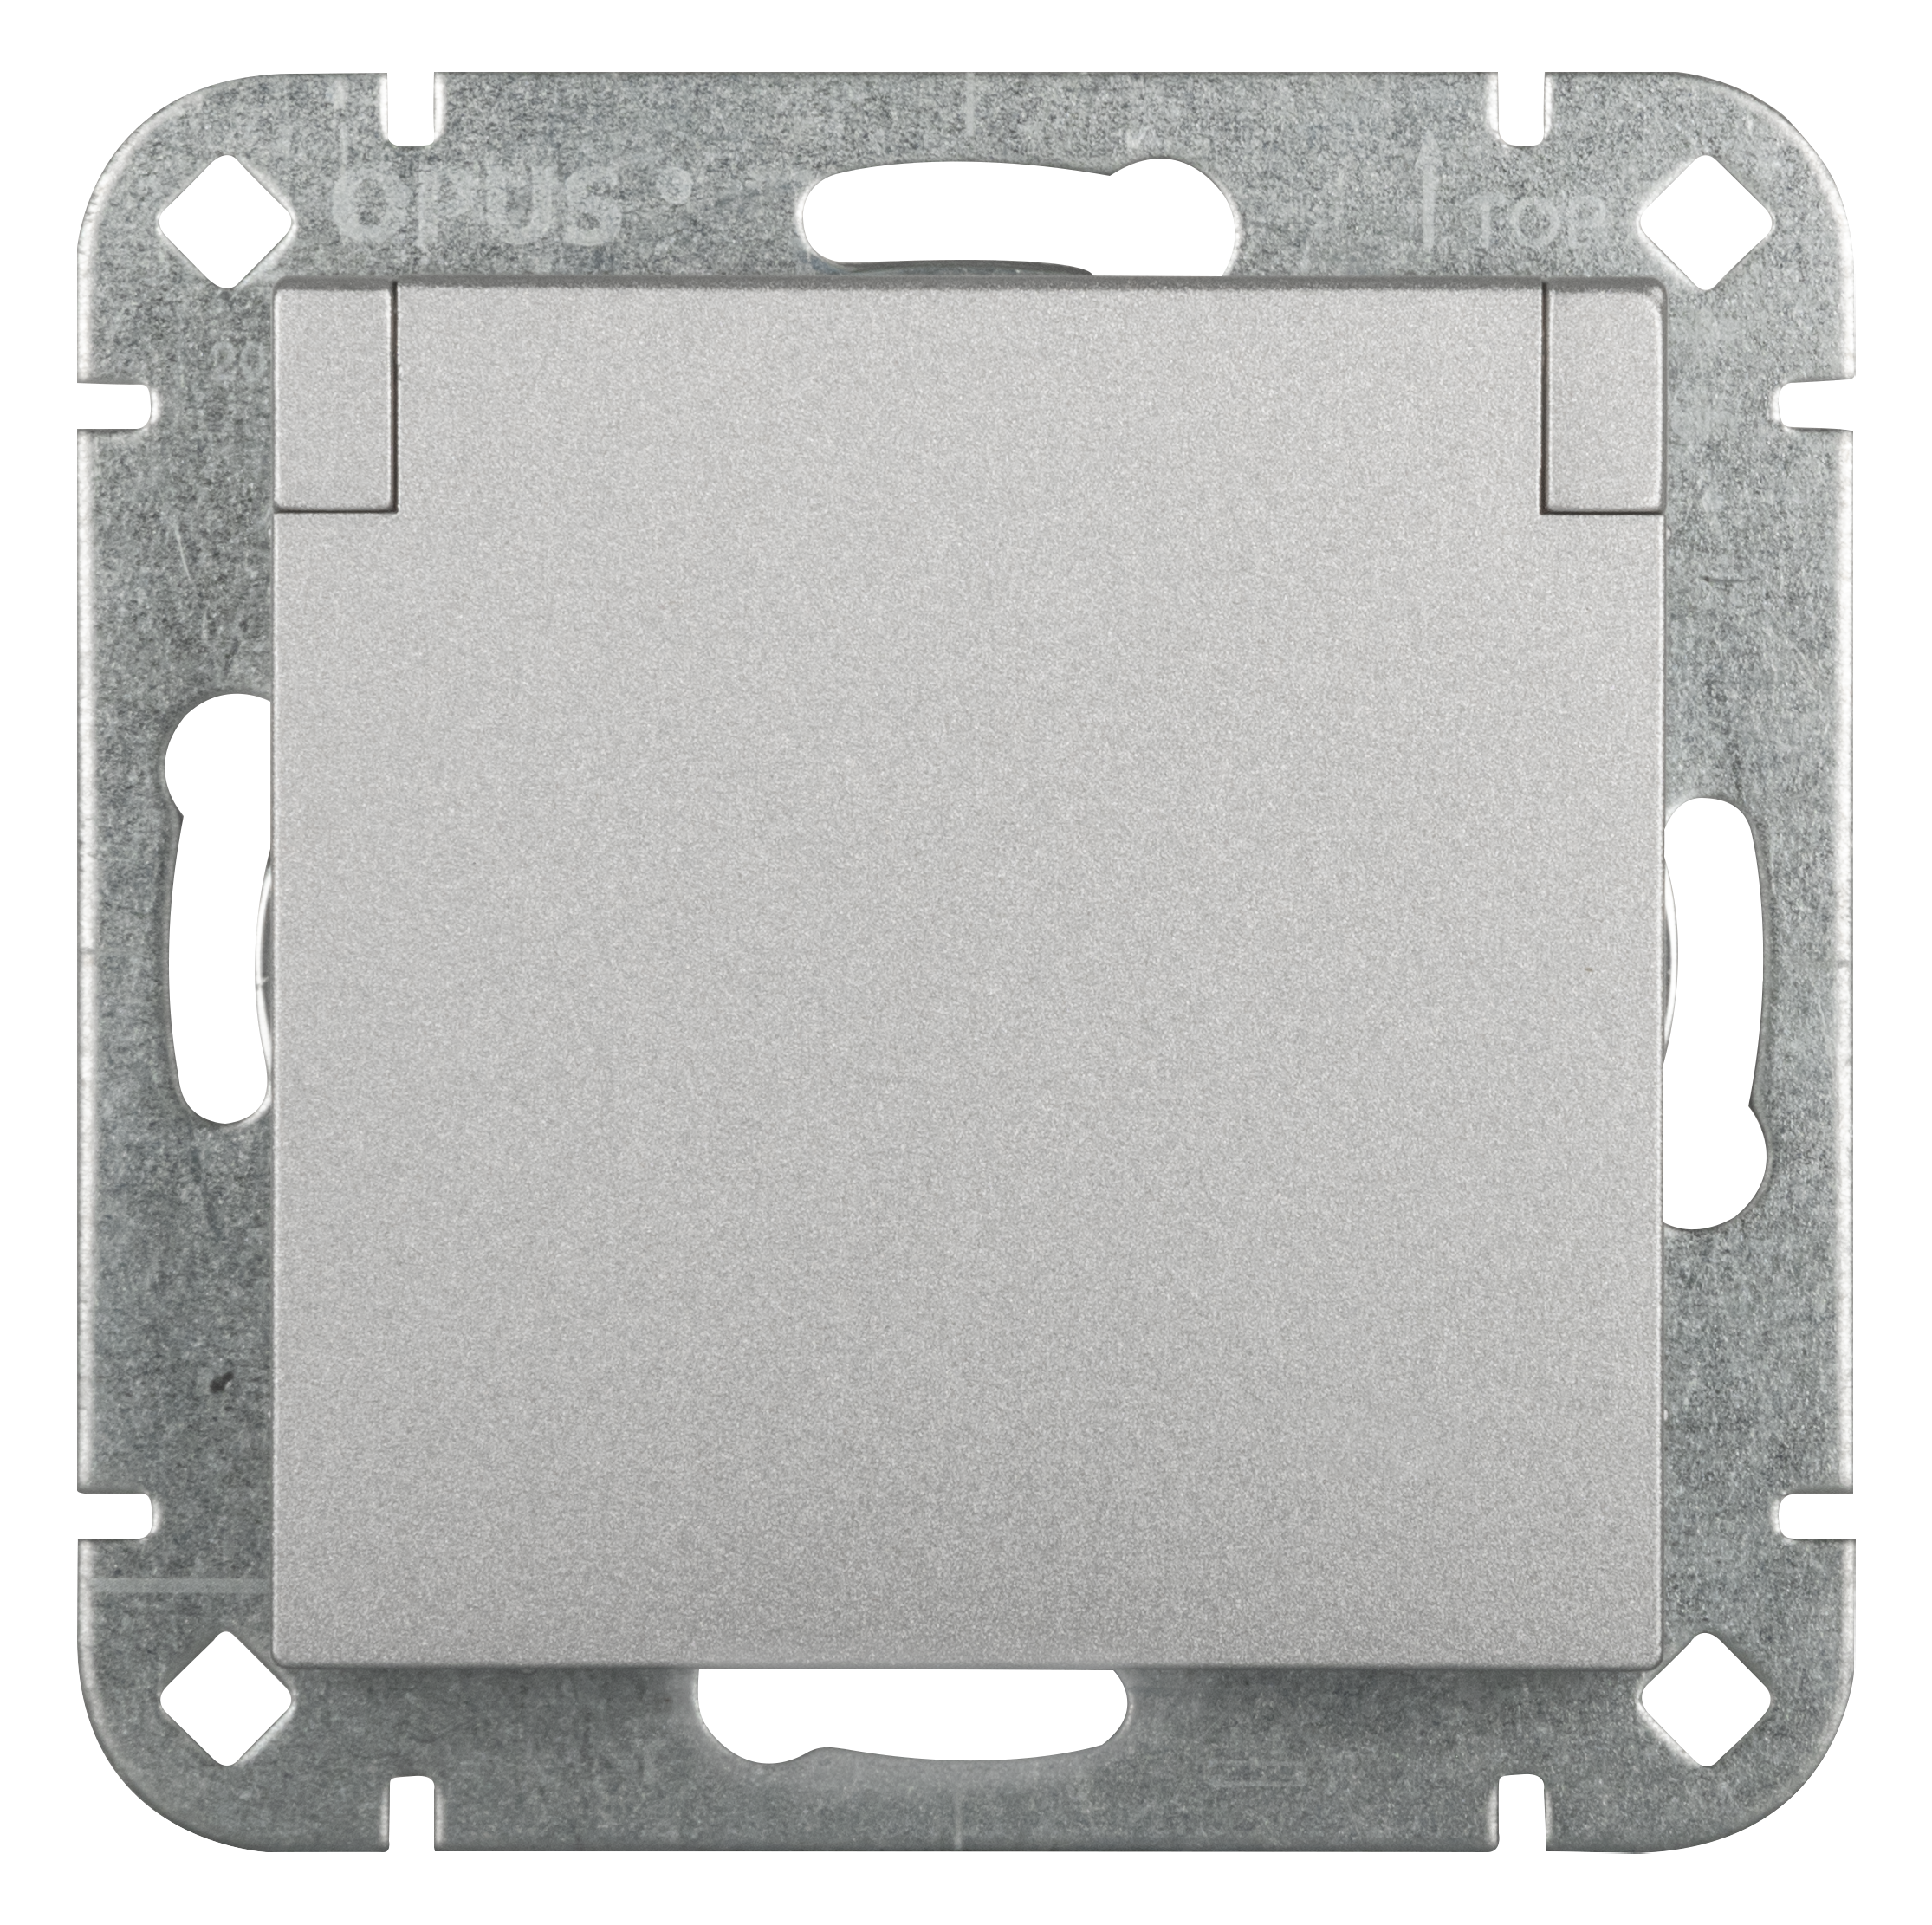 Schutzkontakt-Steckdose Premium mit Federklappdeckel und erhöhtem Berührungsschutz alu-silber-seidenglanz OPUS 55